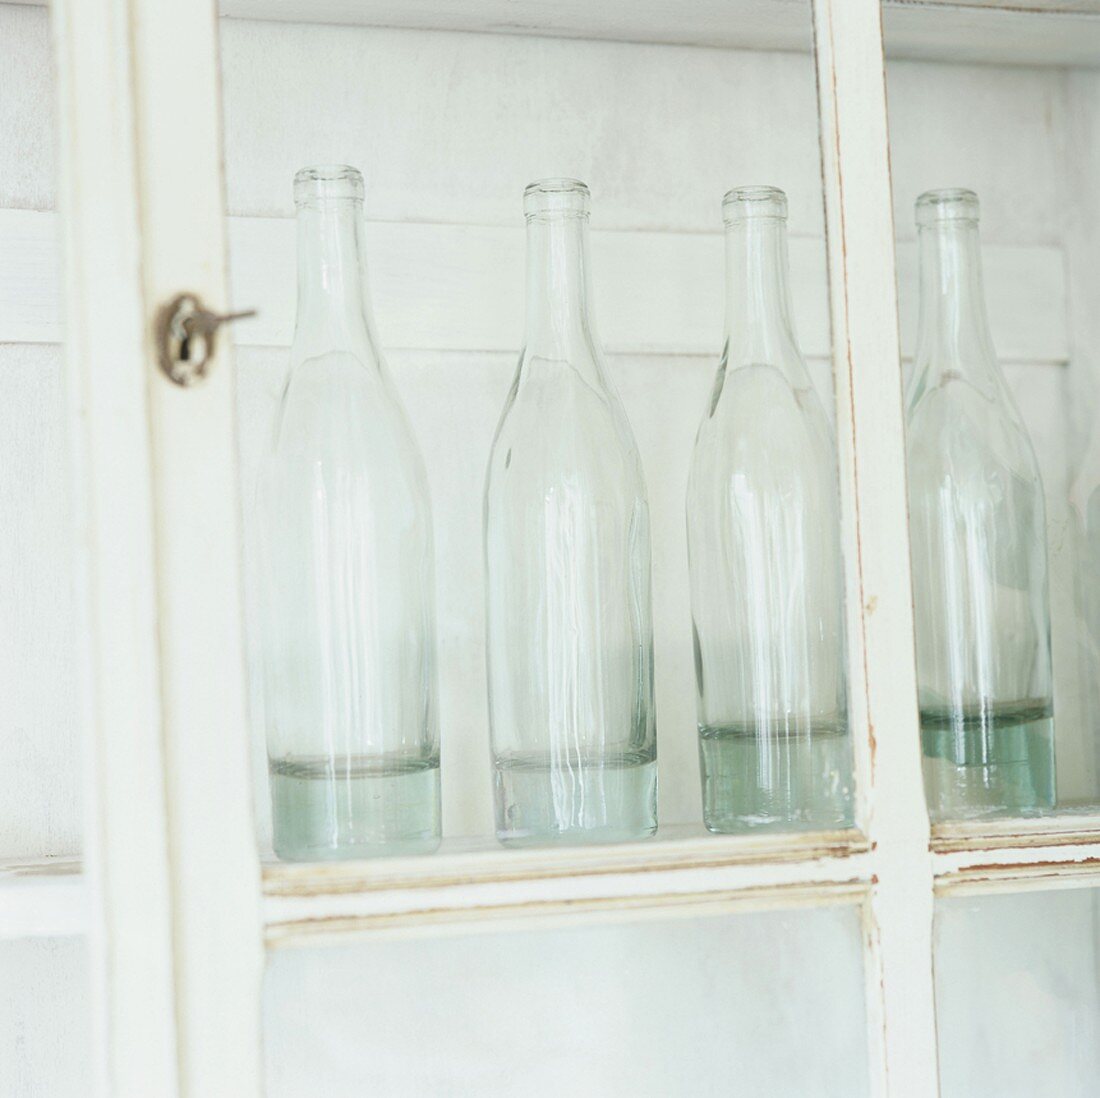 Flaschen in einem Schrank